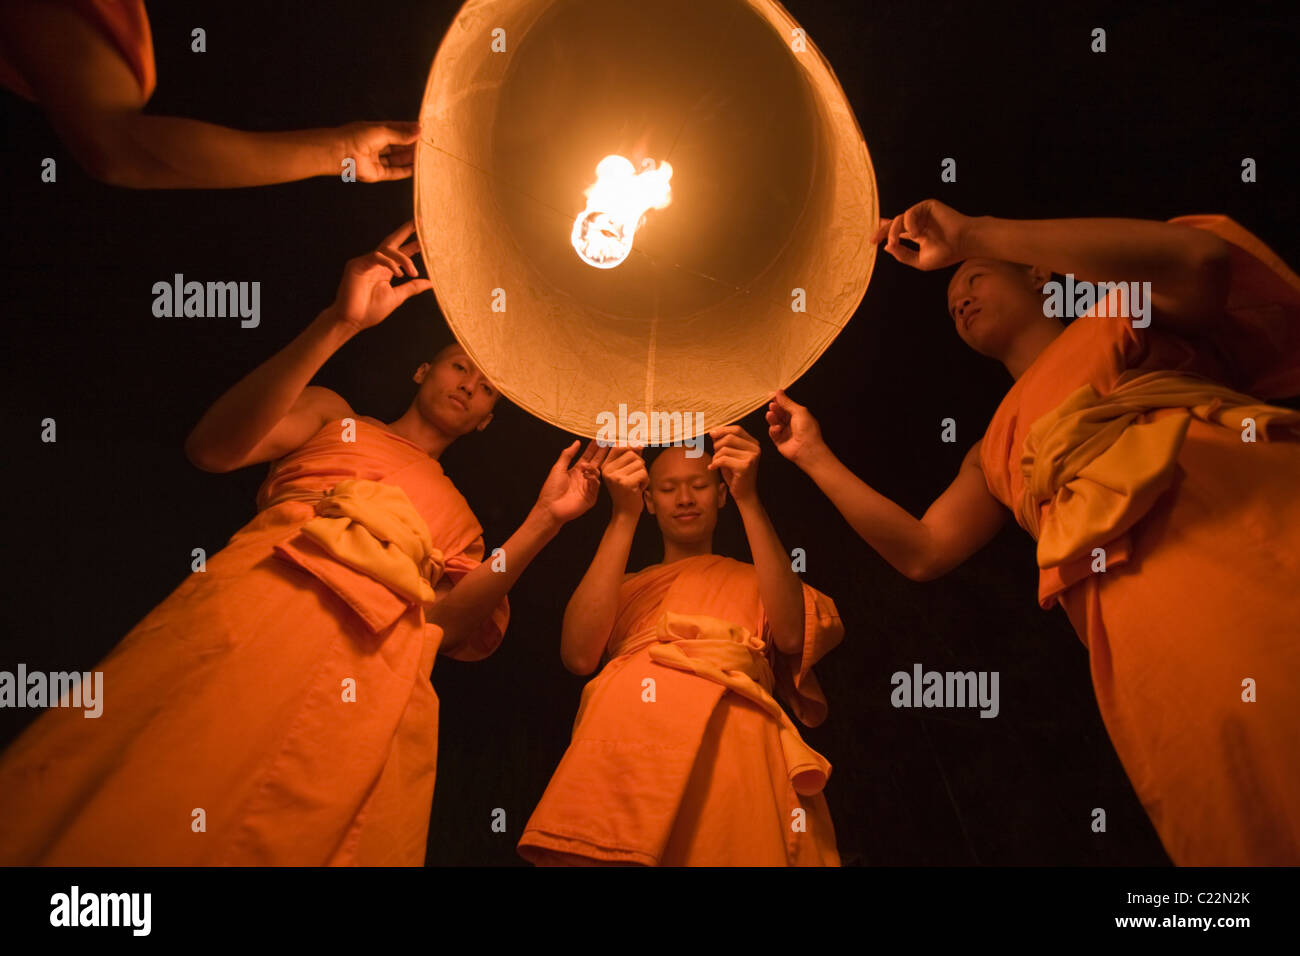 Lancement des moines khom ldi (sky lanternes) dans le ciel nocturne pendant le festival Yi Peng. San Sai, Chiang Mai, Thaïlande Banque D'Images